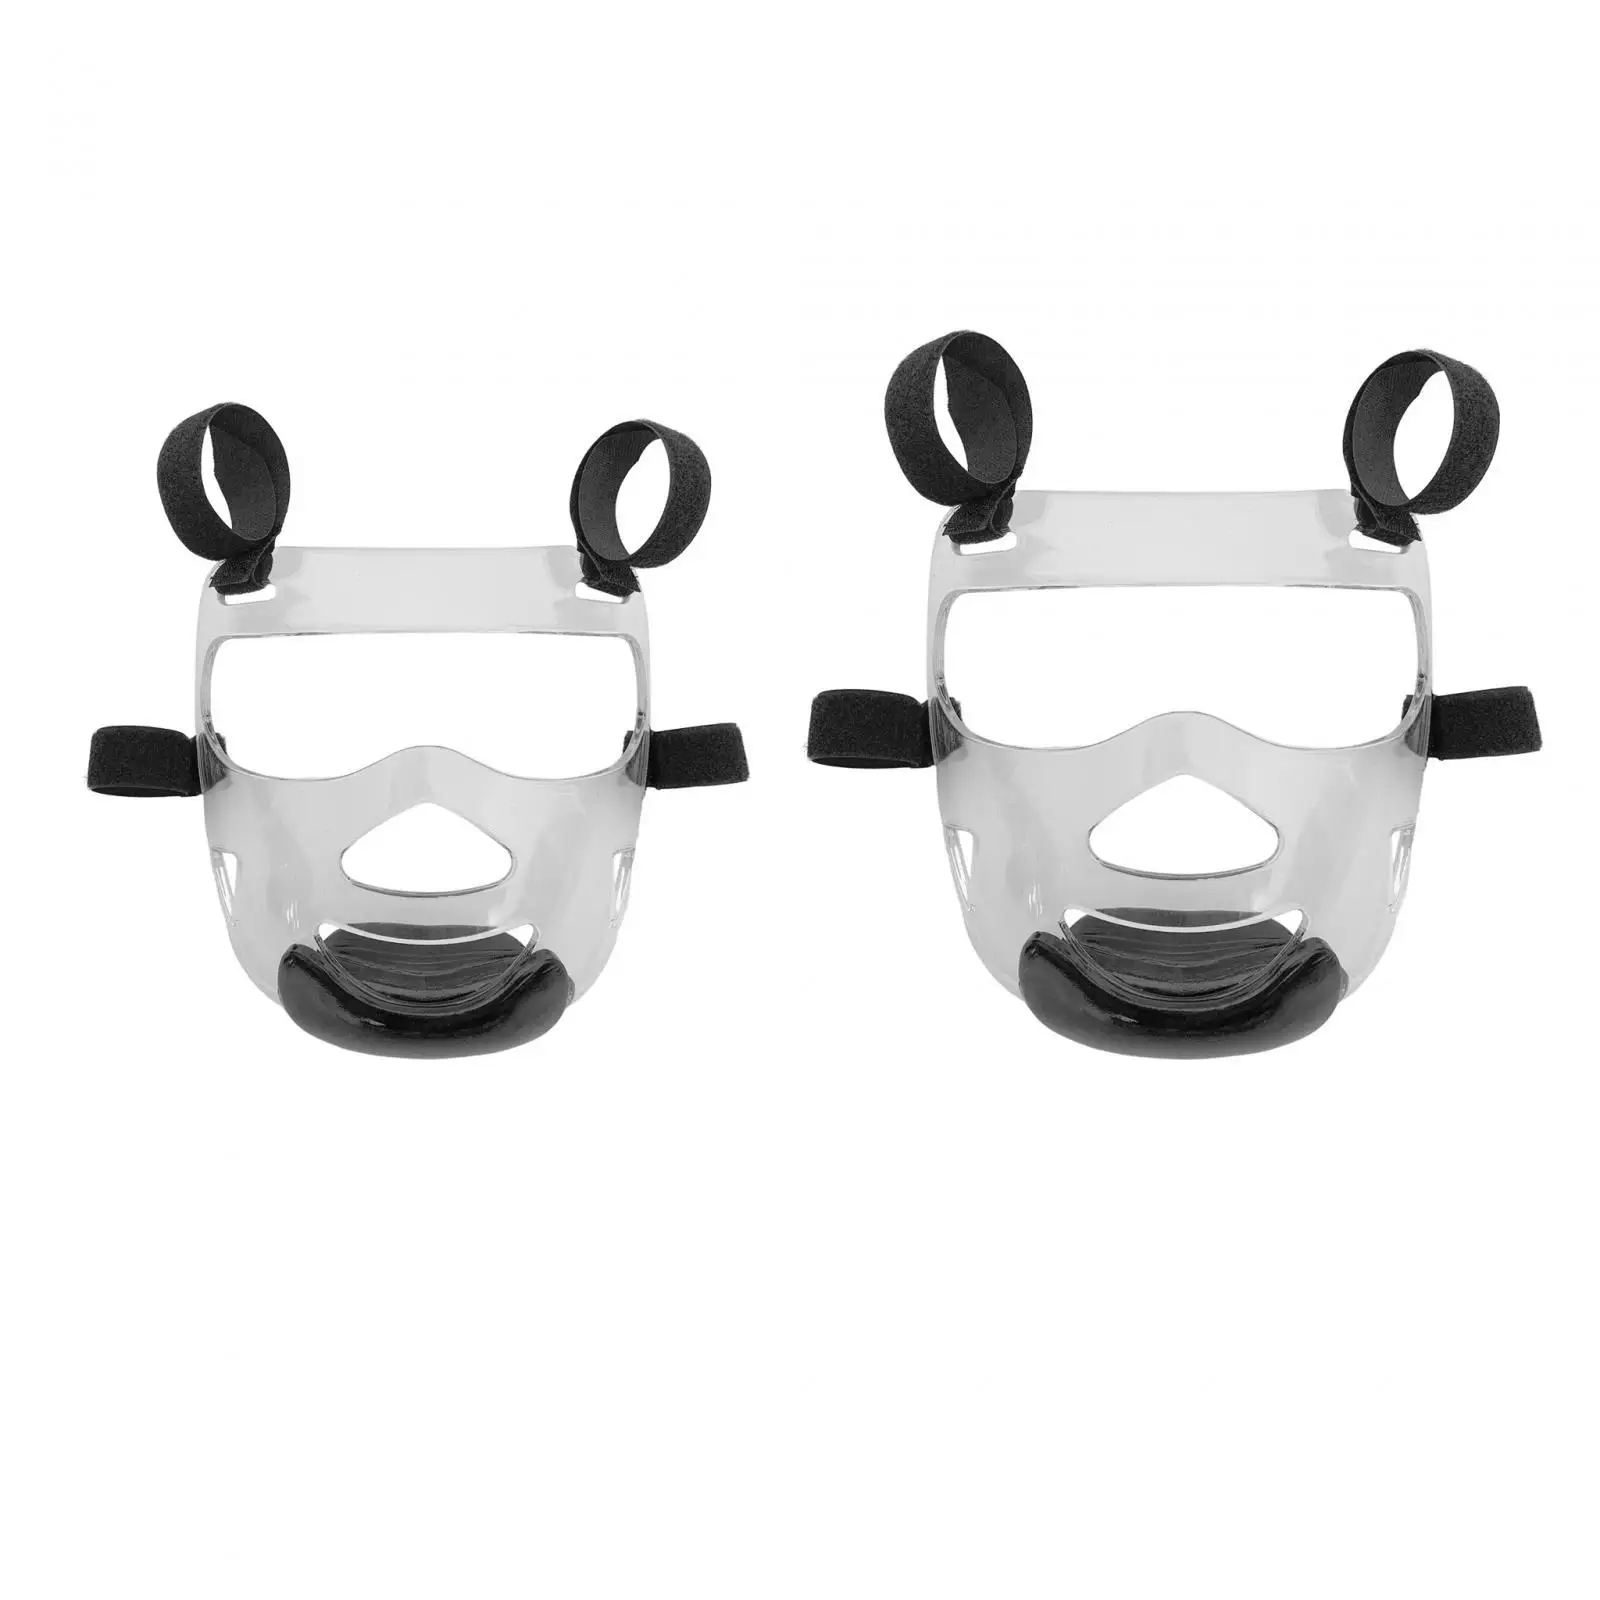 Taekwondo Face Mask Taekwondo Face Shield Detachable Face Protection Cover Clear Face Guard Sparring Mask for Martial Arts Sanda